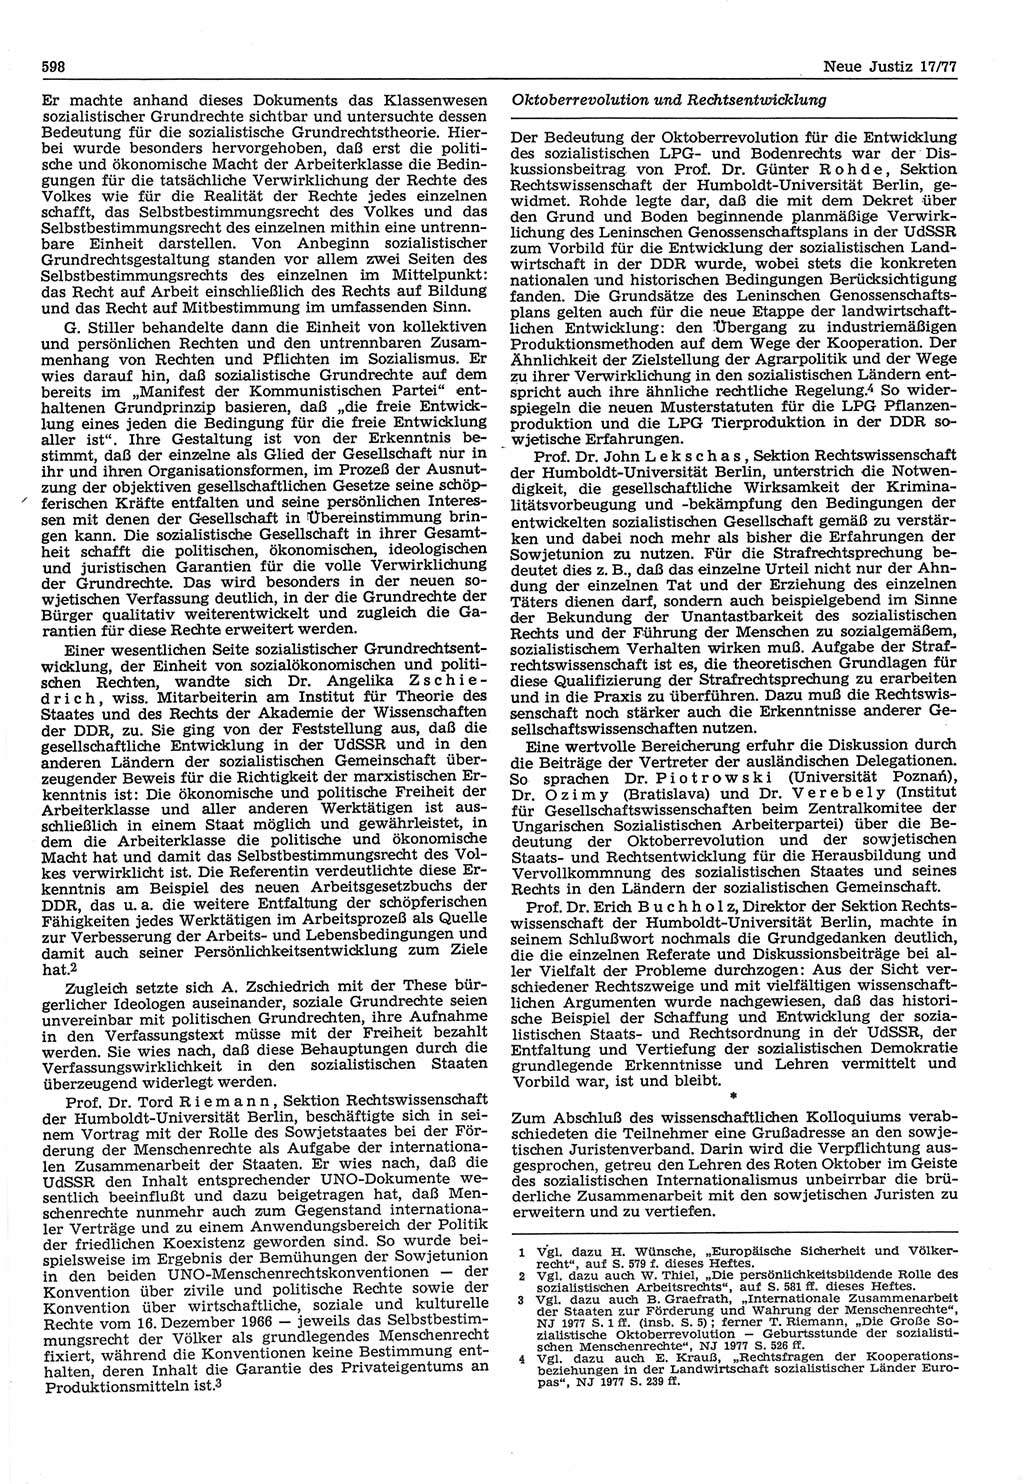 Neue Justiz (NJ), Zeitschrift für Recht und Rechtswissenschaft-Zeitschrift, sozialistisches Recht und Gesetzlichkeit, 31. Jahrgang 1977, Seite 598 (NJ DDR 1977, S. 598)